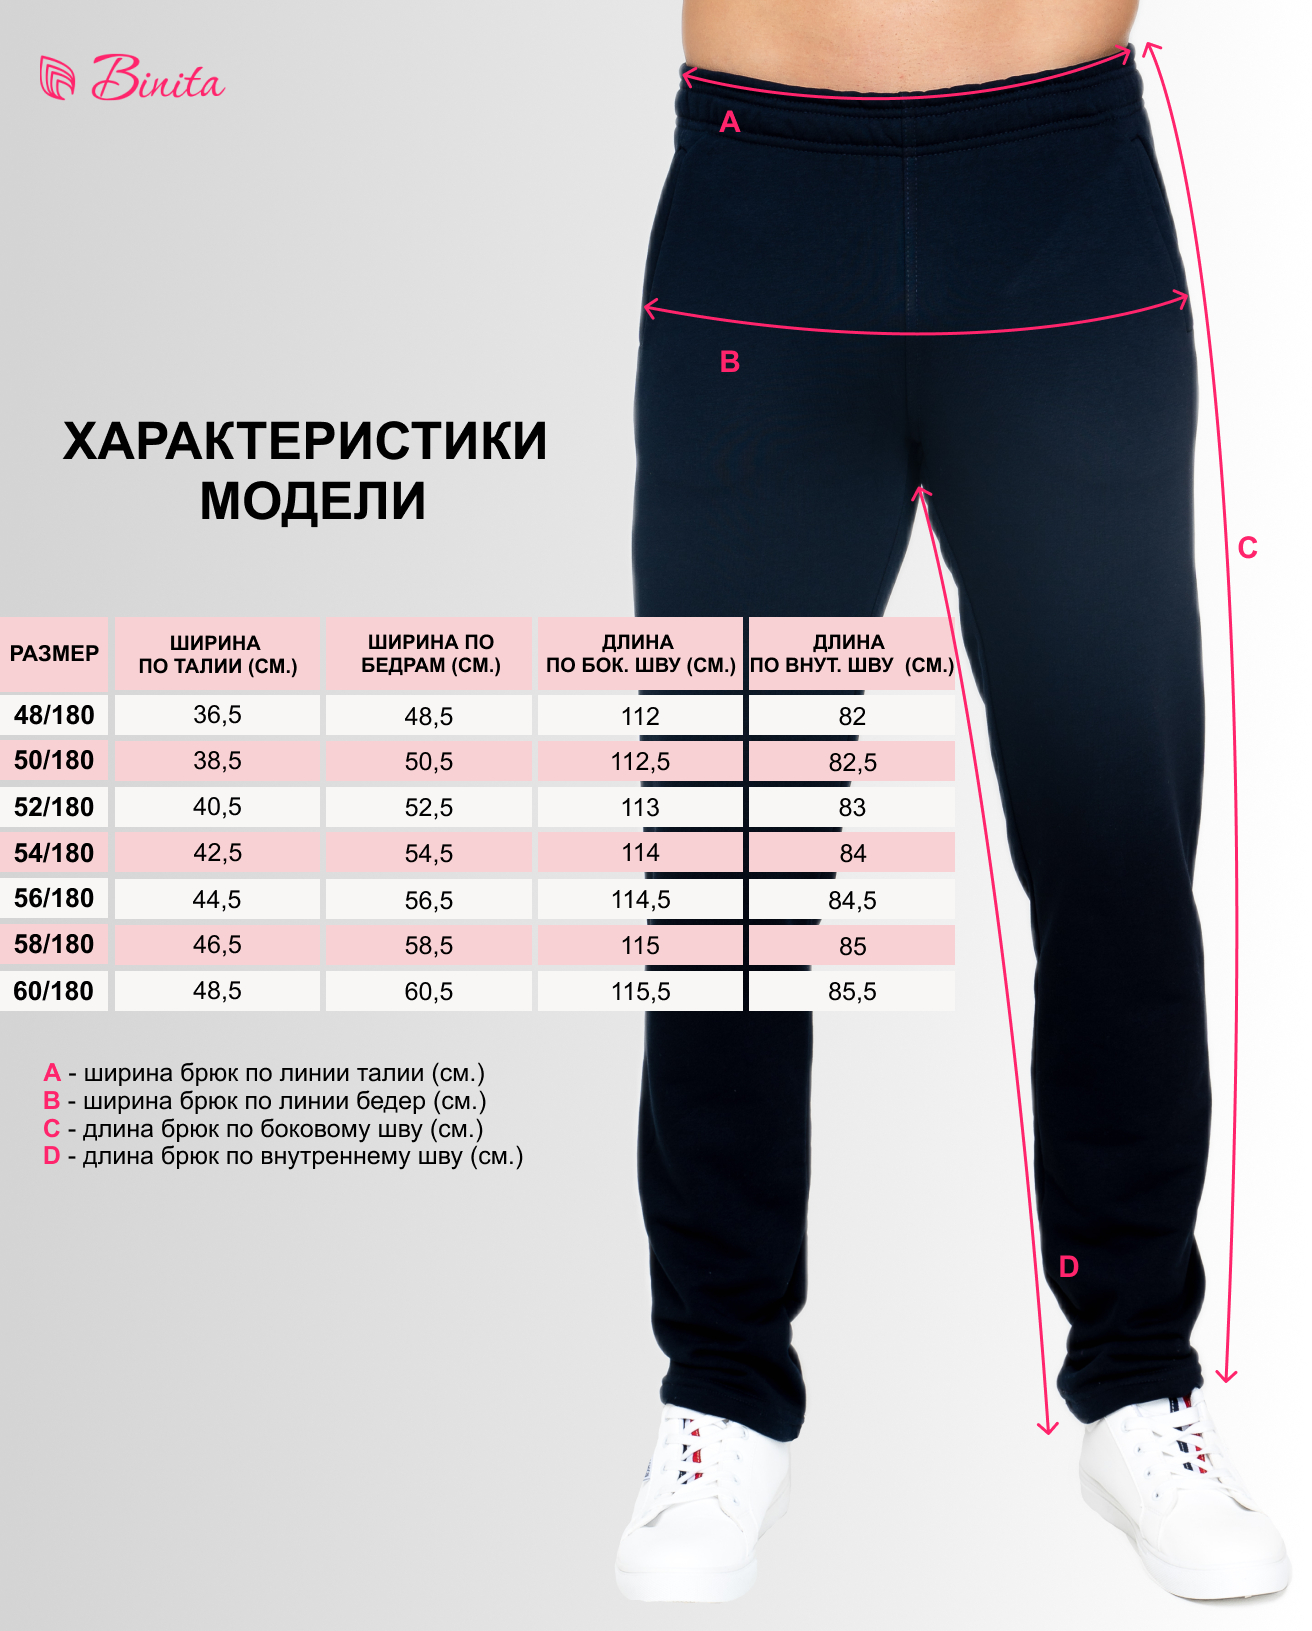 Размеры спортивных штанов